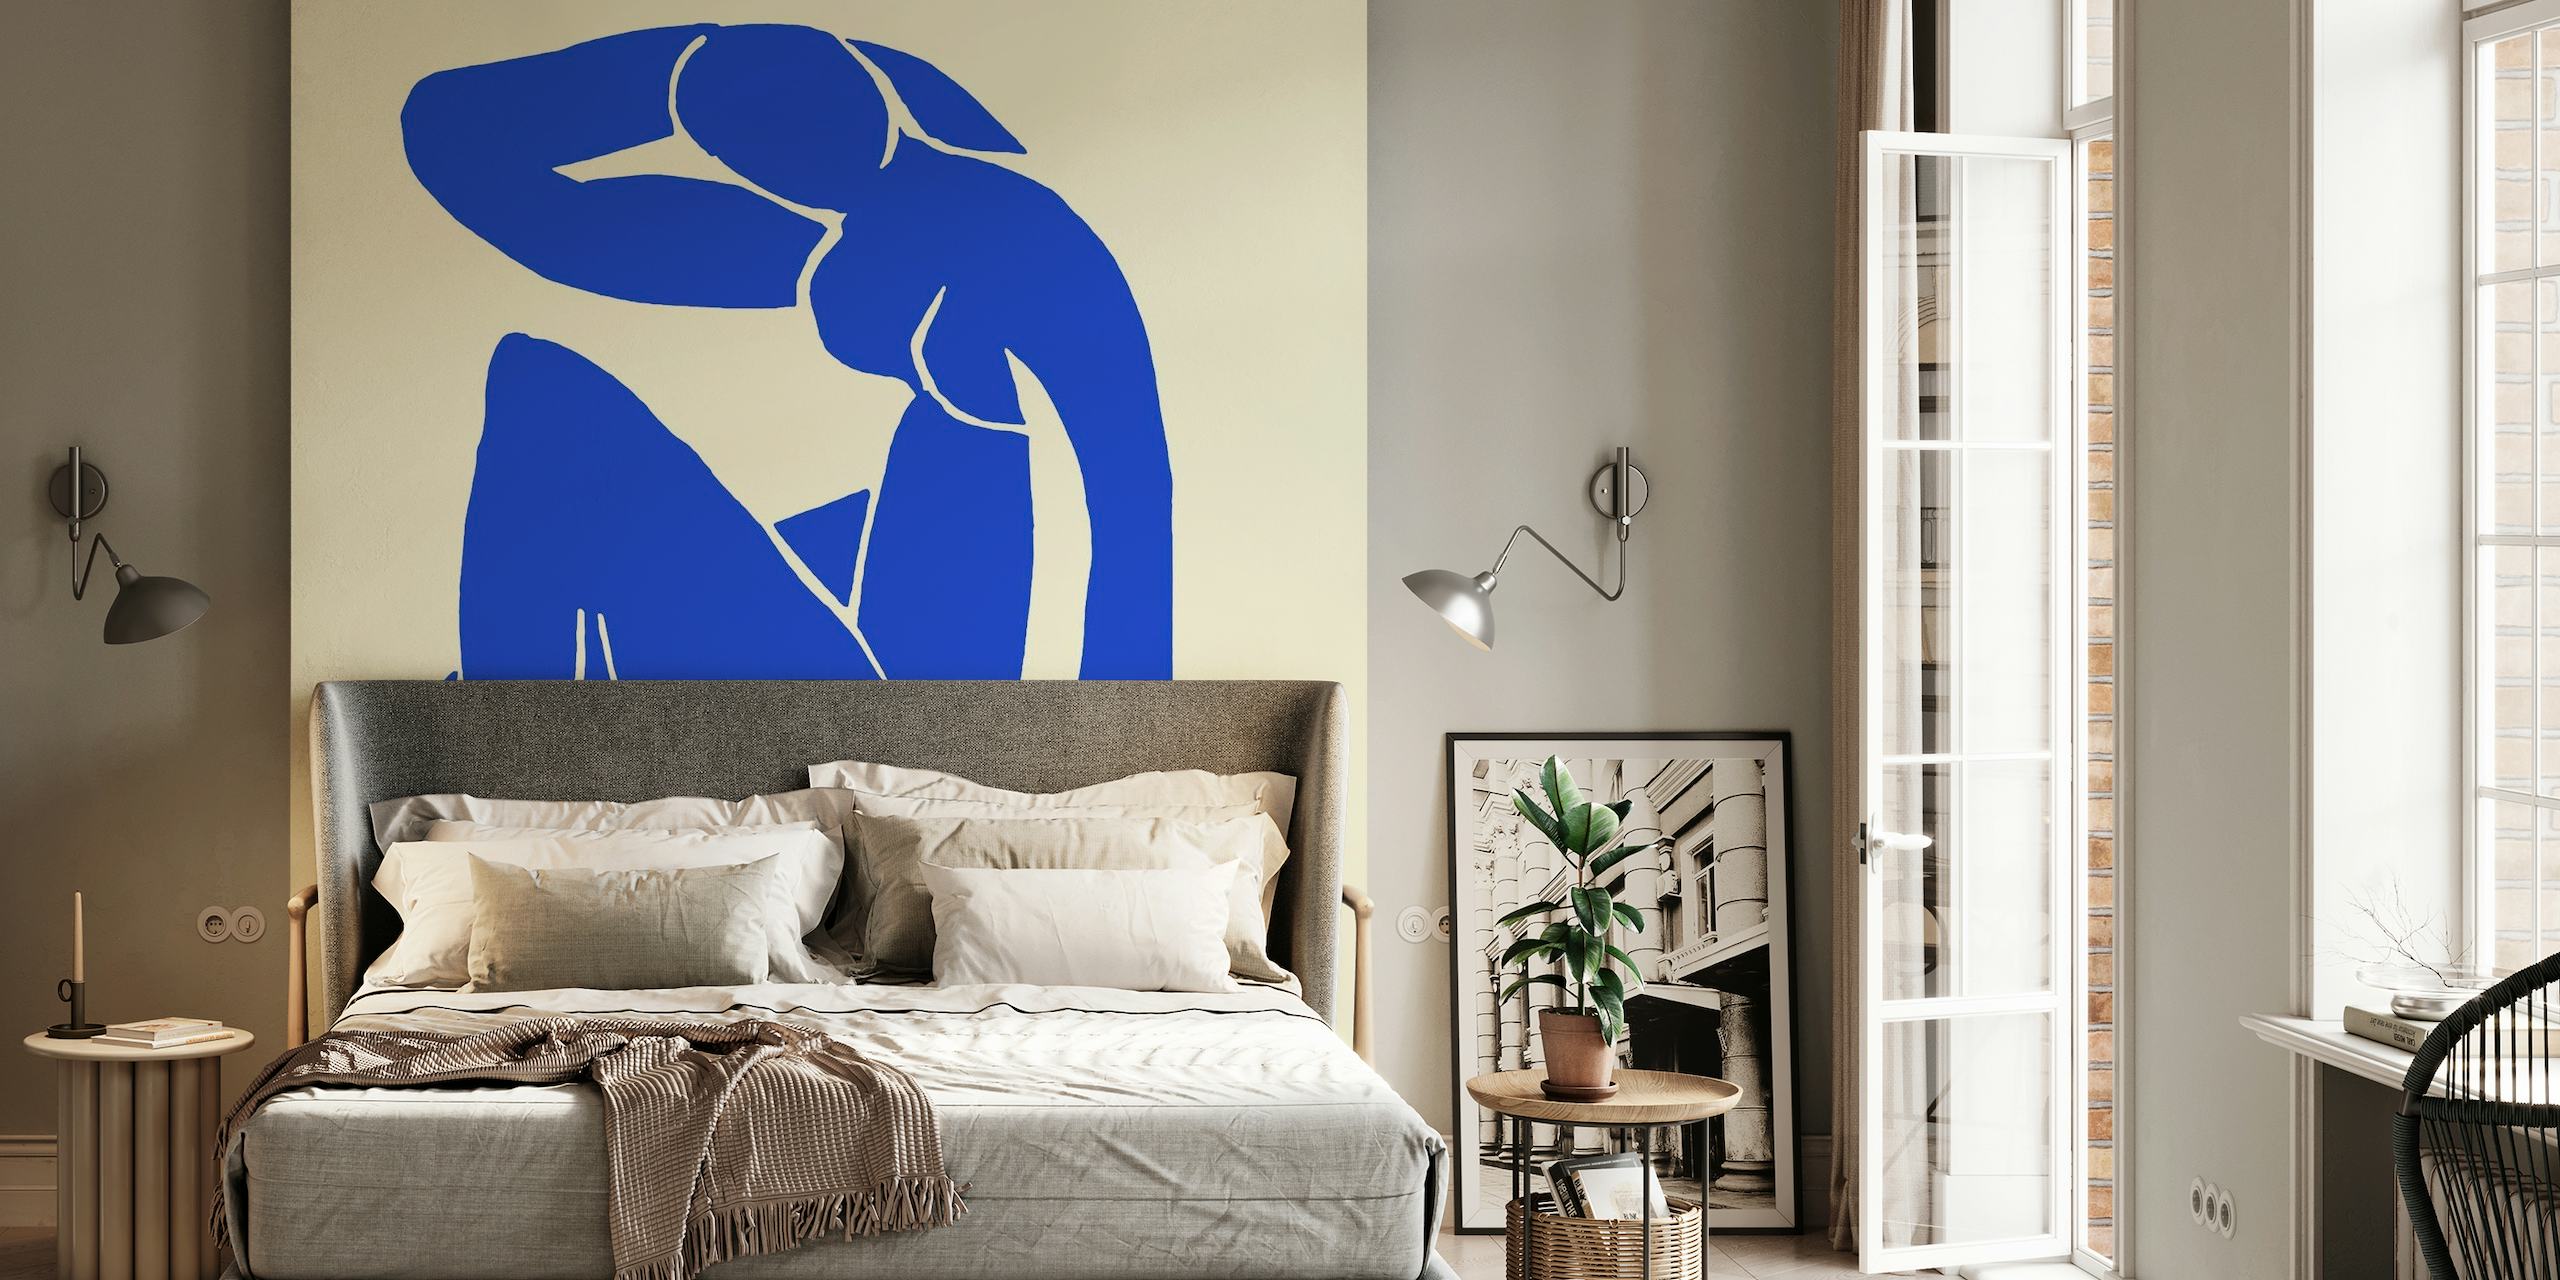 Mural abstracto de figuras azules inspirado en el estilo artístico de Matisse